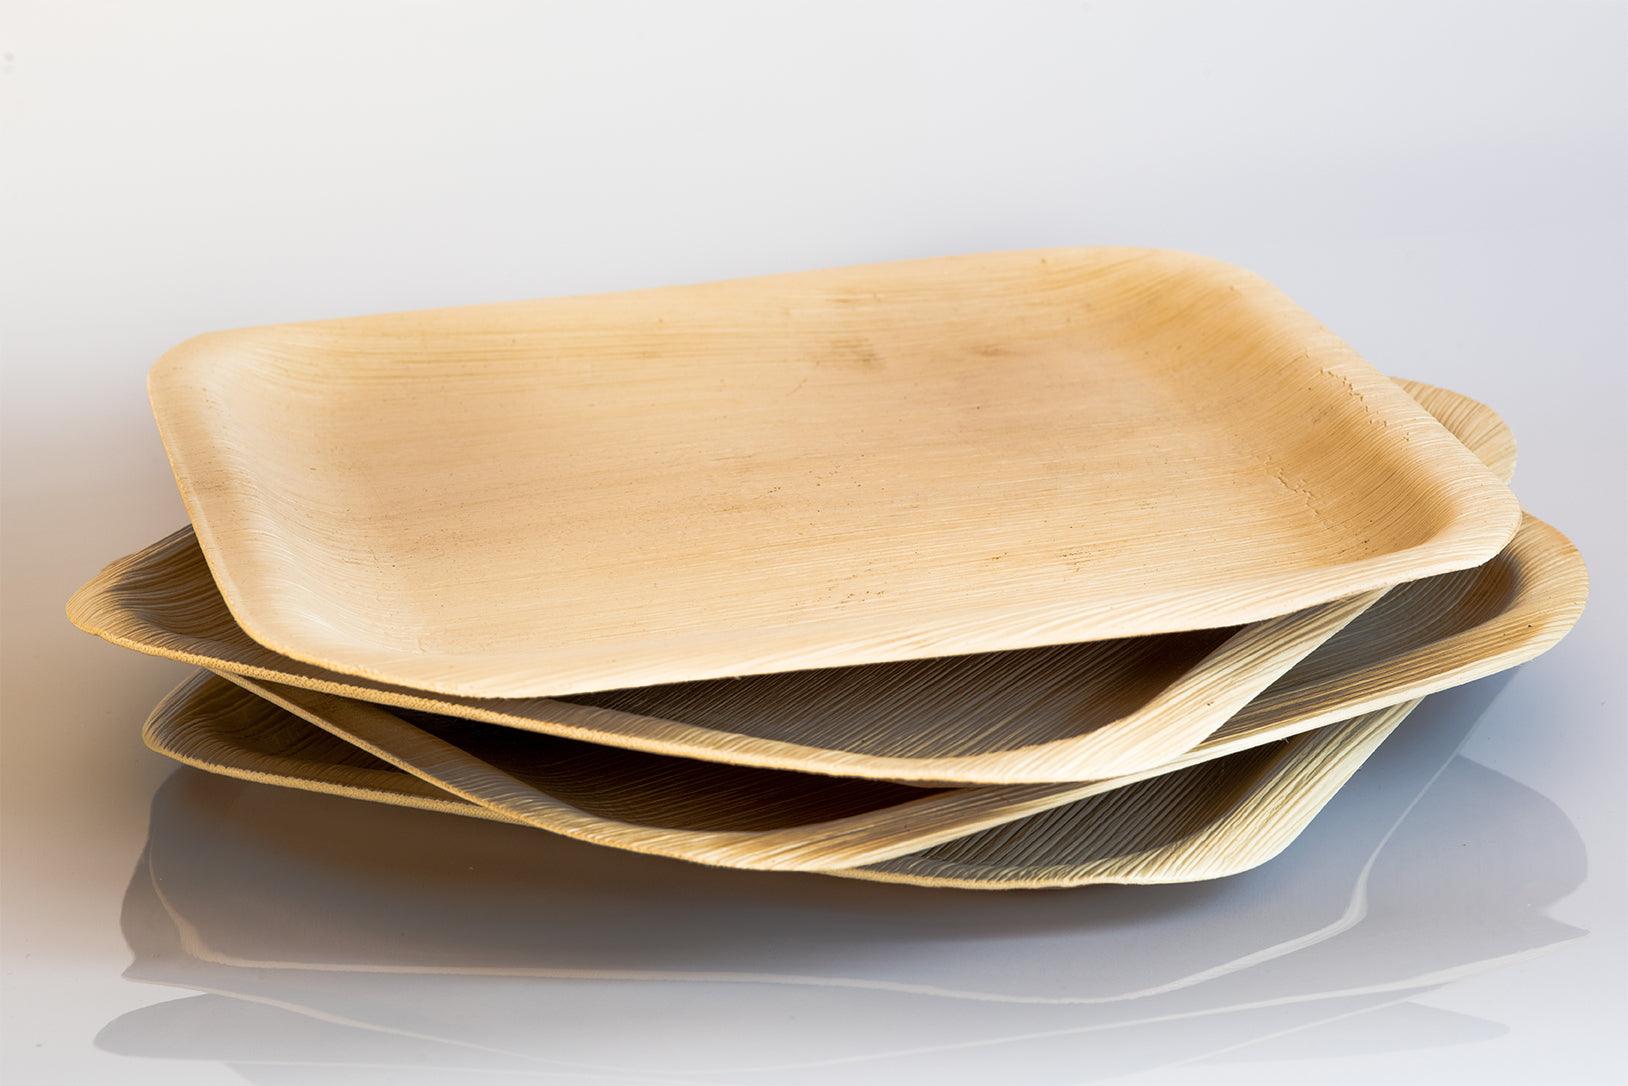 Palm Leaf Plates - Seek Bamboo